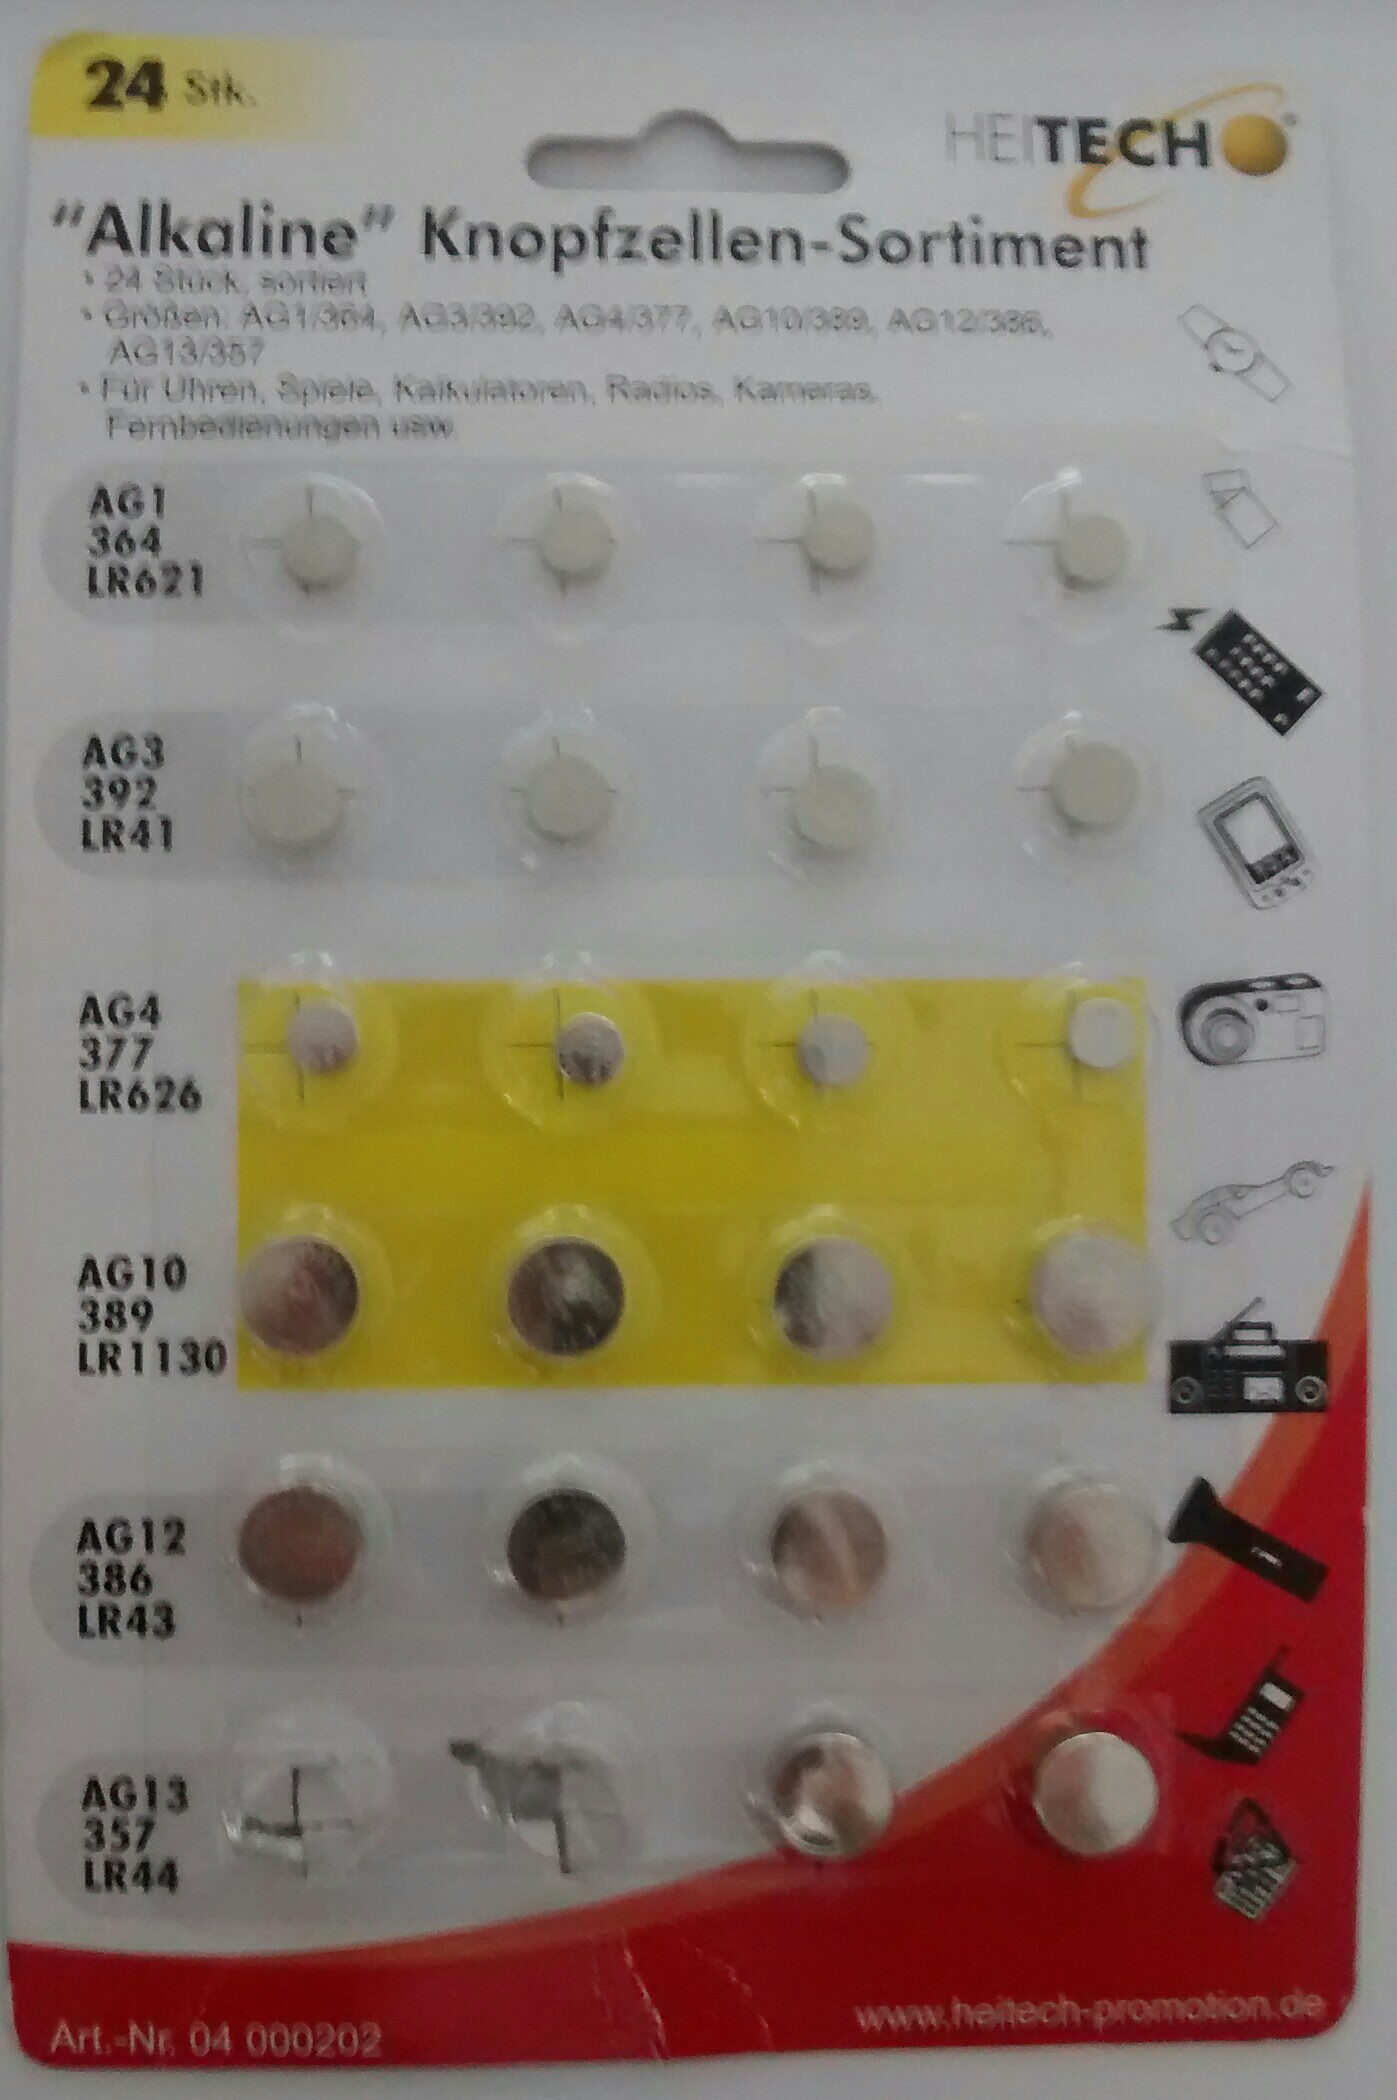 Alkaline Knopfzellen-Sortiment - Product - en